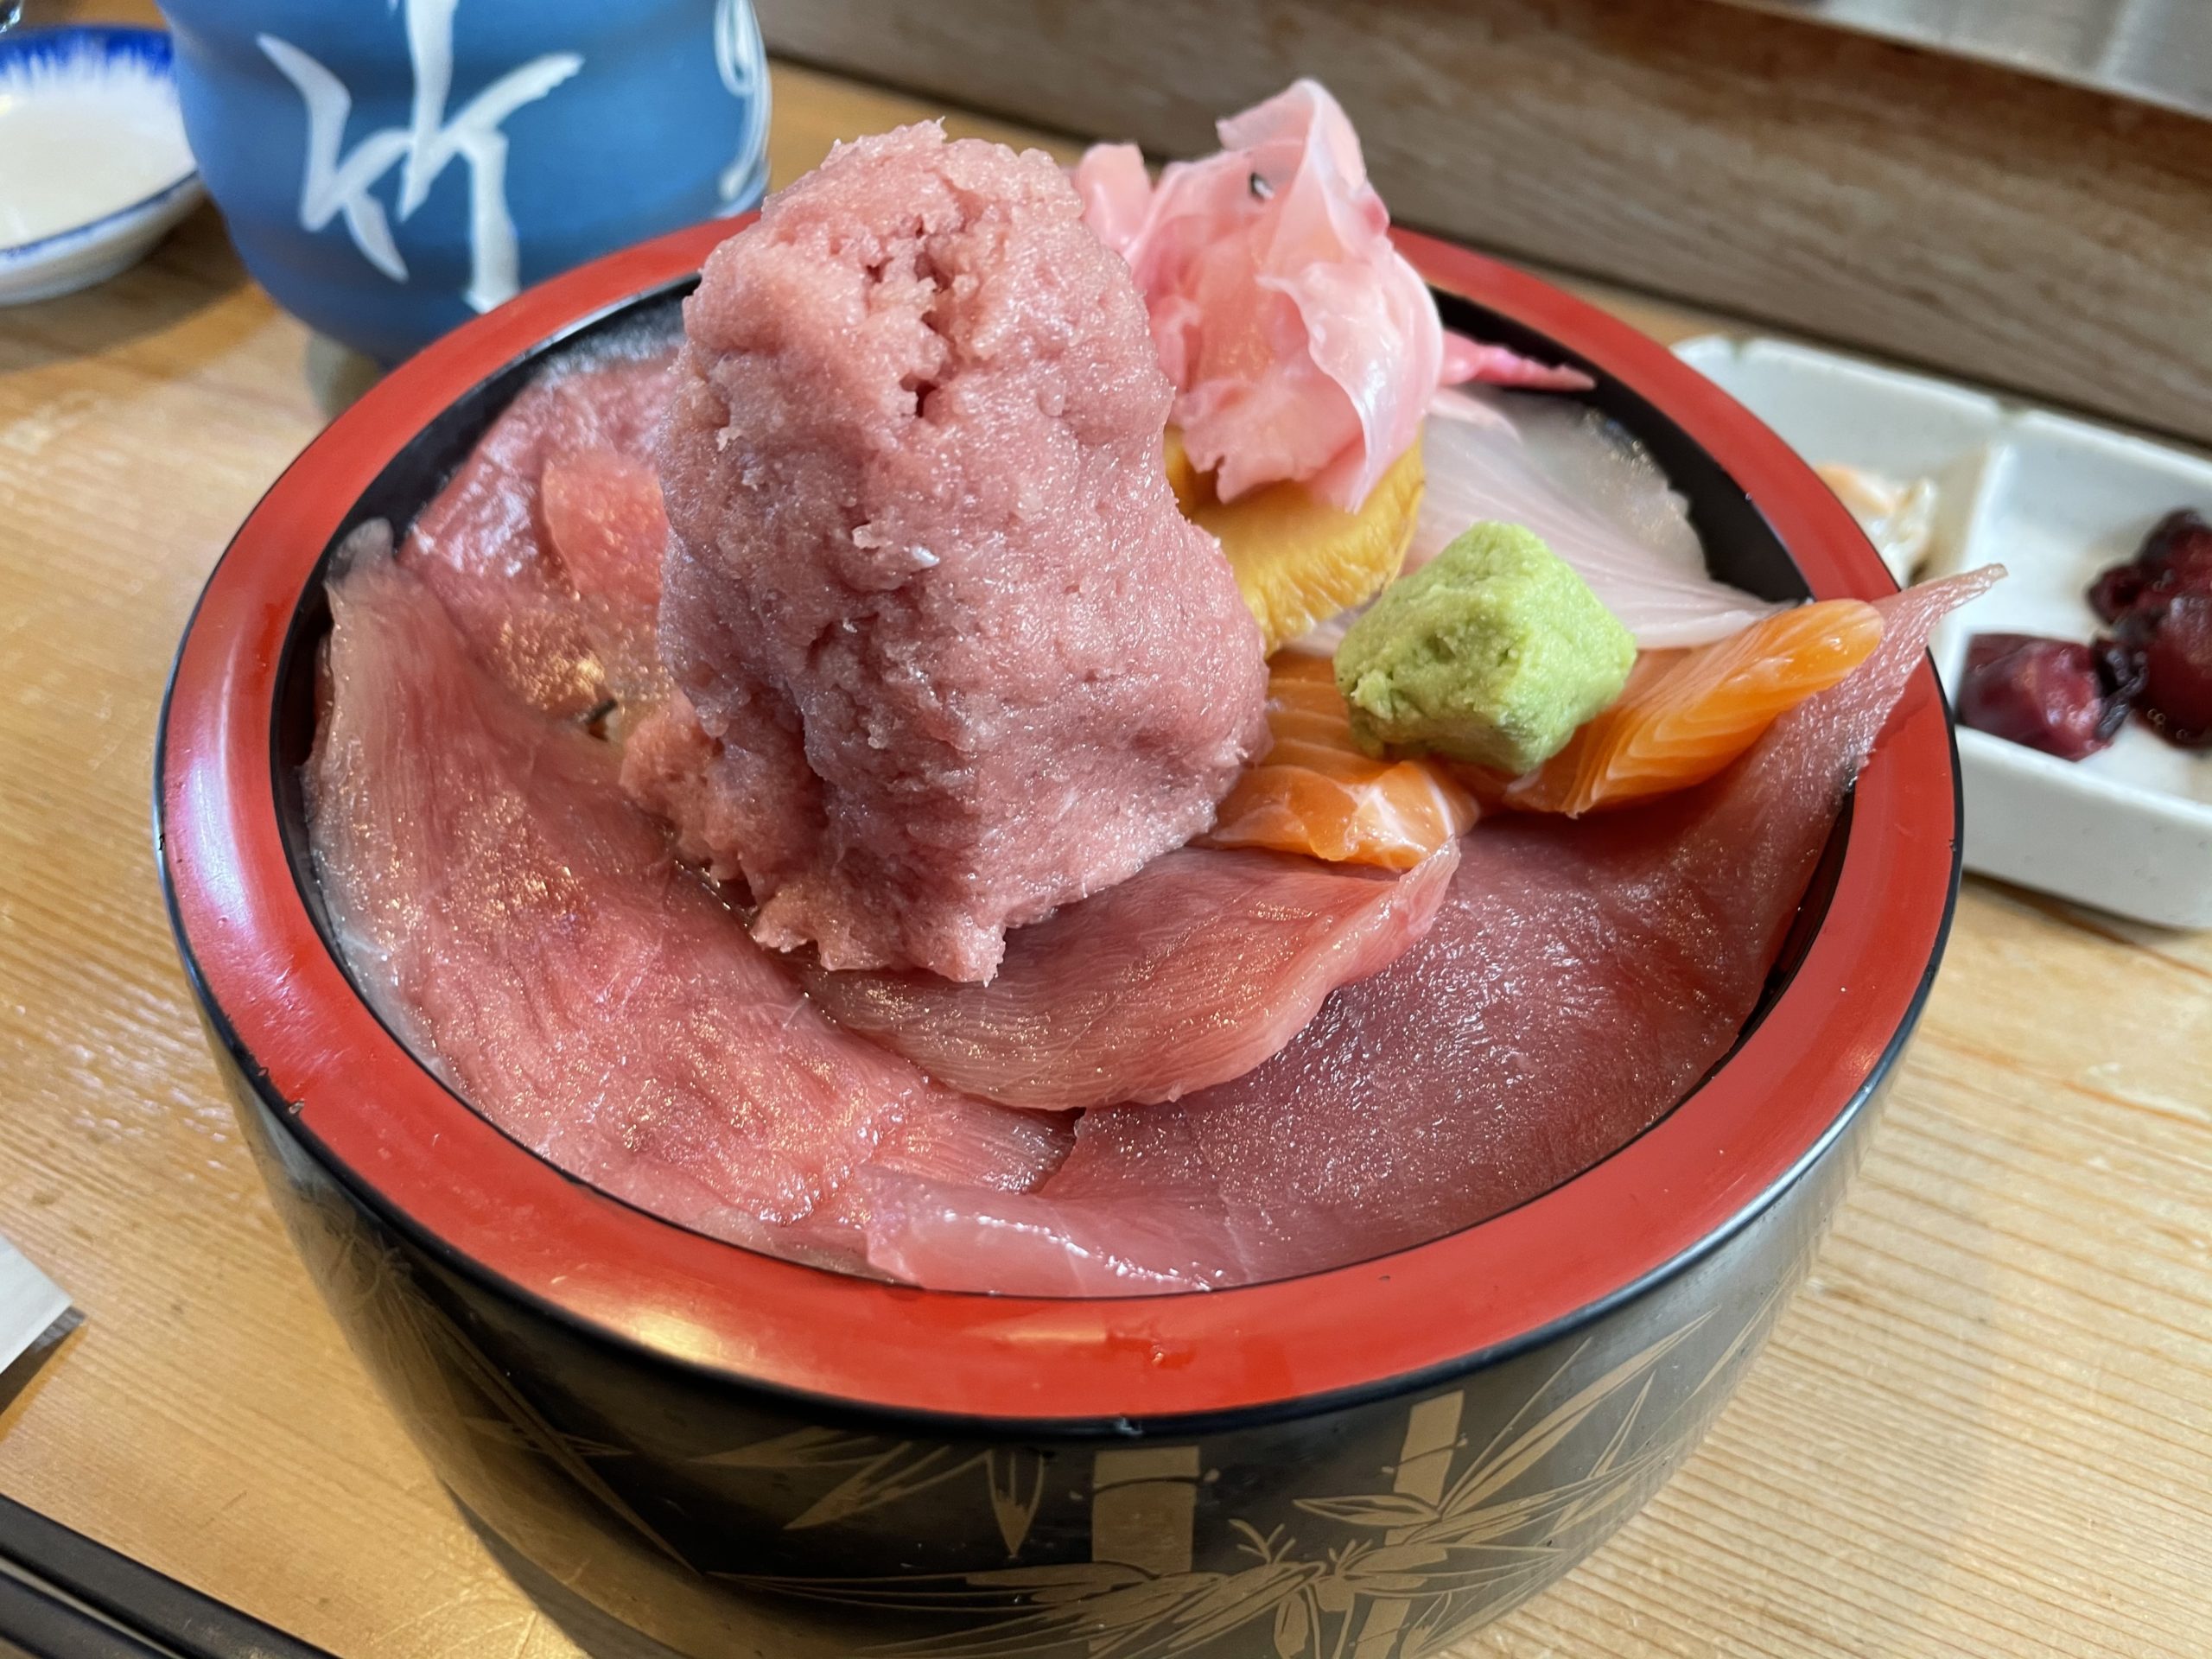 埼玉県東松山のデカ盛り海鮮丼 味も抜群の竹寿司さんは月川荘の近く かとりせんこうキャンプブログ